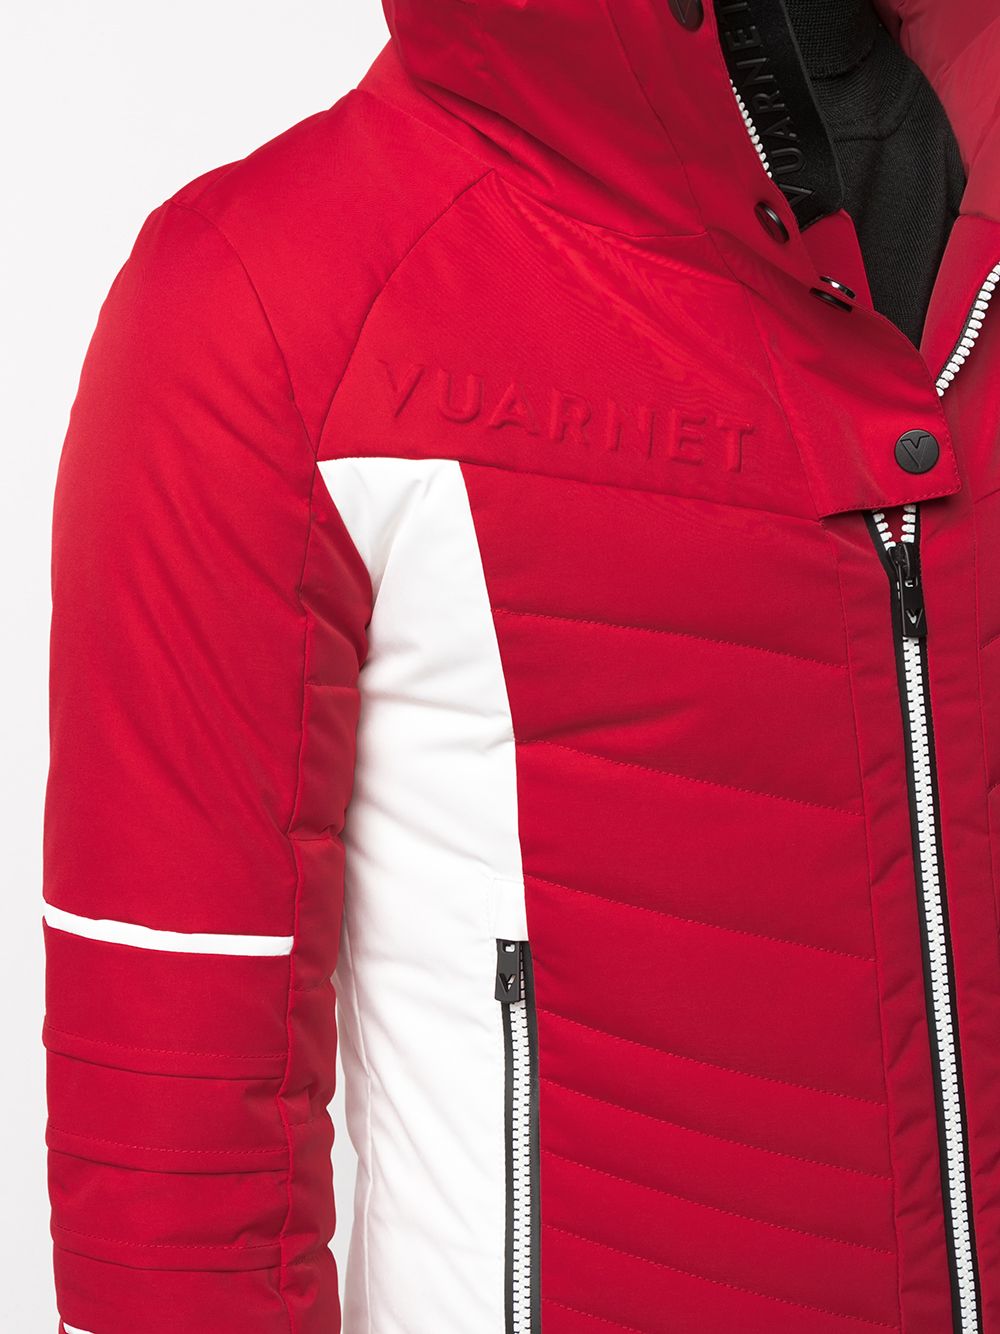 фото Vuarnet лыжная куртка с тисненым логотипом